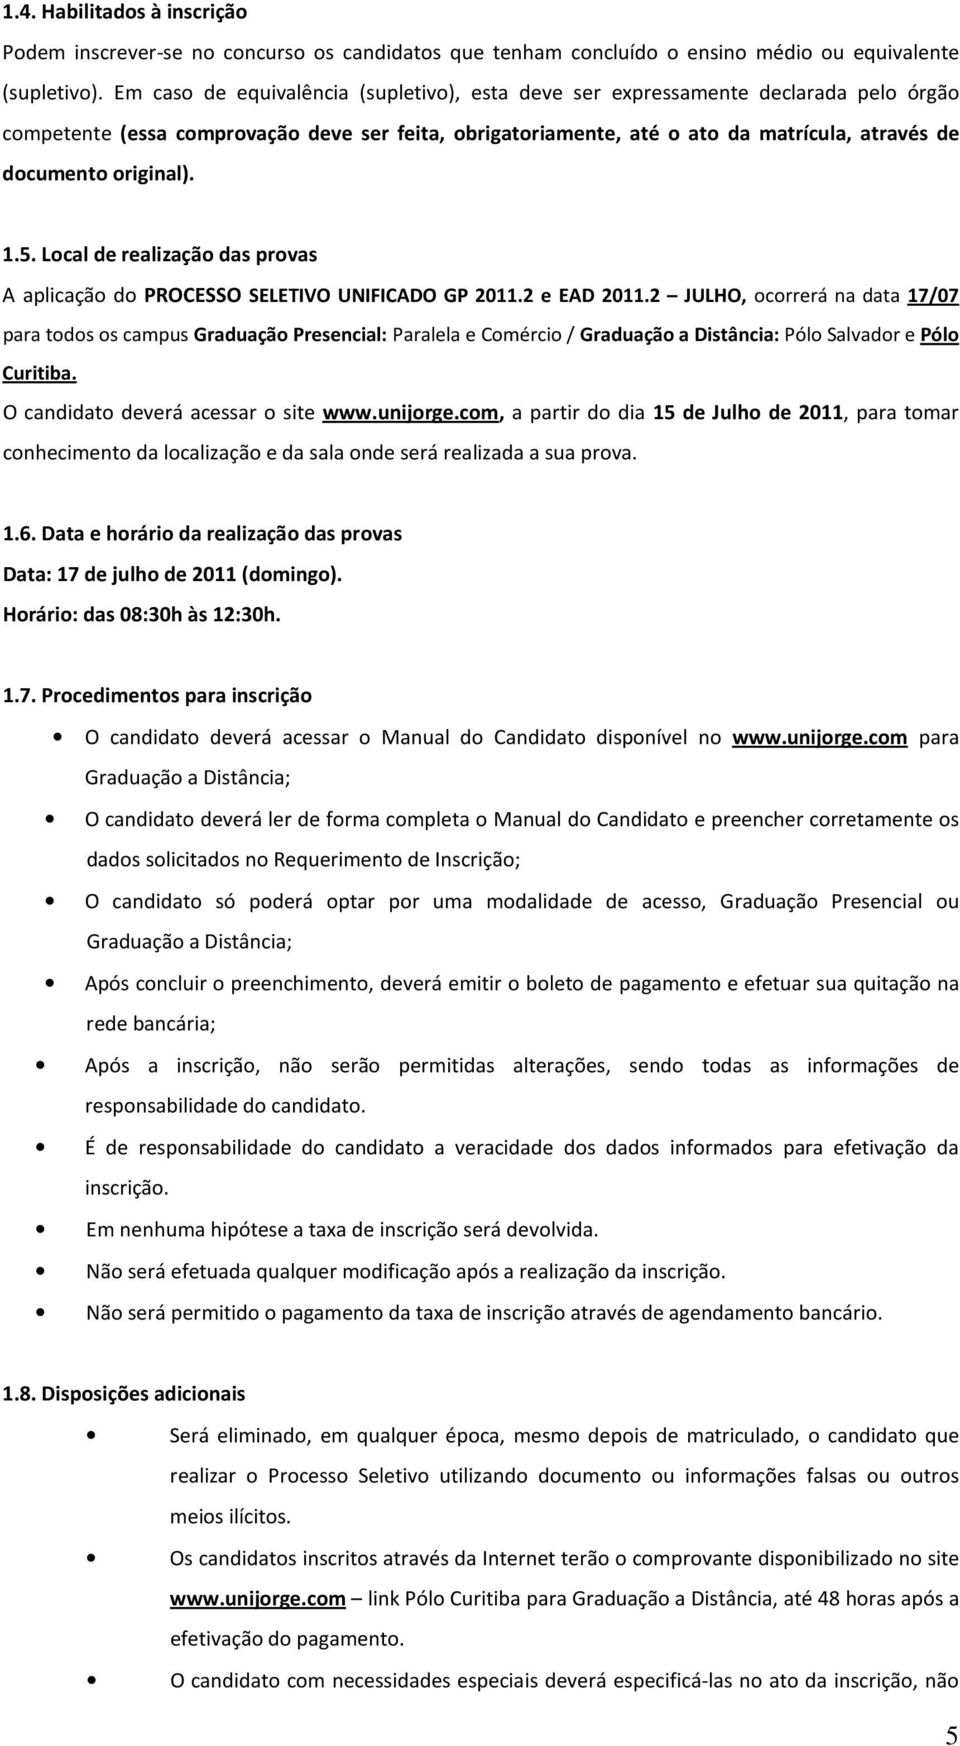 original). 1.5. Local de realização das provas A aplicação do PROCESSO SELETIVO UNIFICADO GP 2011.2 e EAD 2011.